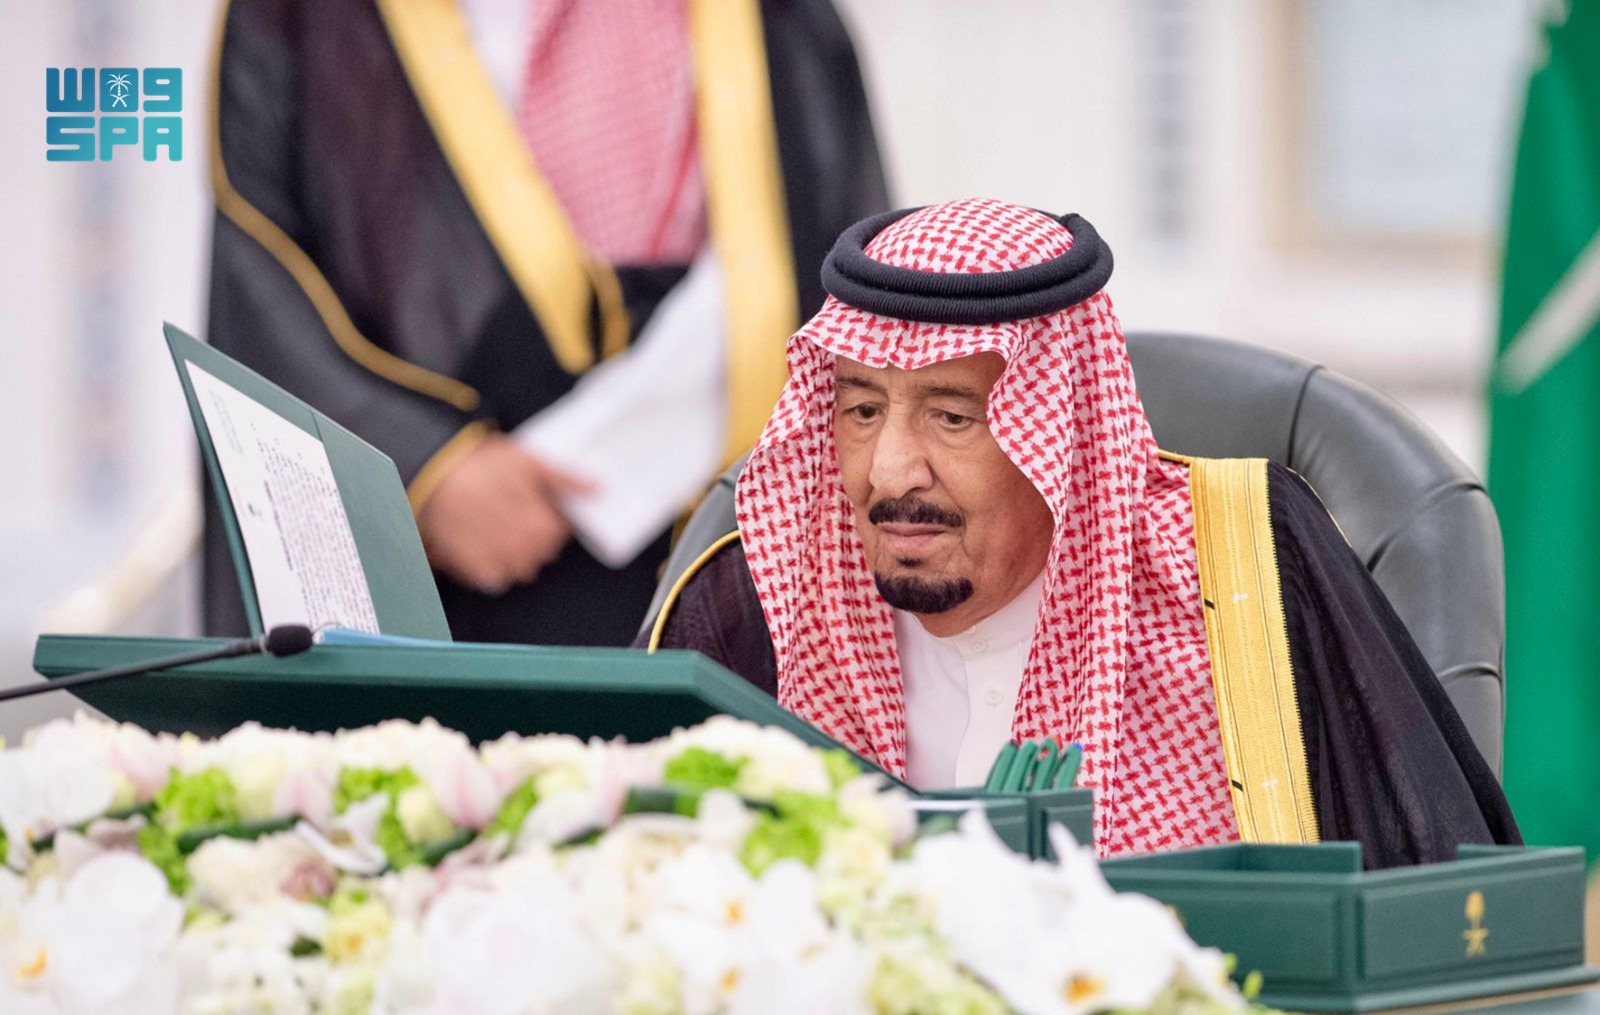 صورة نشرتها وكالة الأنباء السعودي للملك سلمان وقالت إنها في جلسة مجلس الوزراء بتاريخ 11 من يوليو الجاري